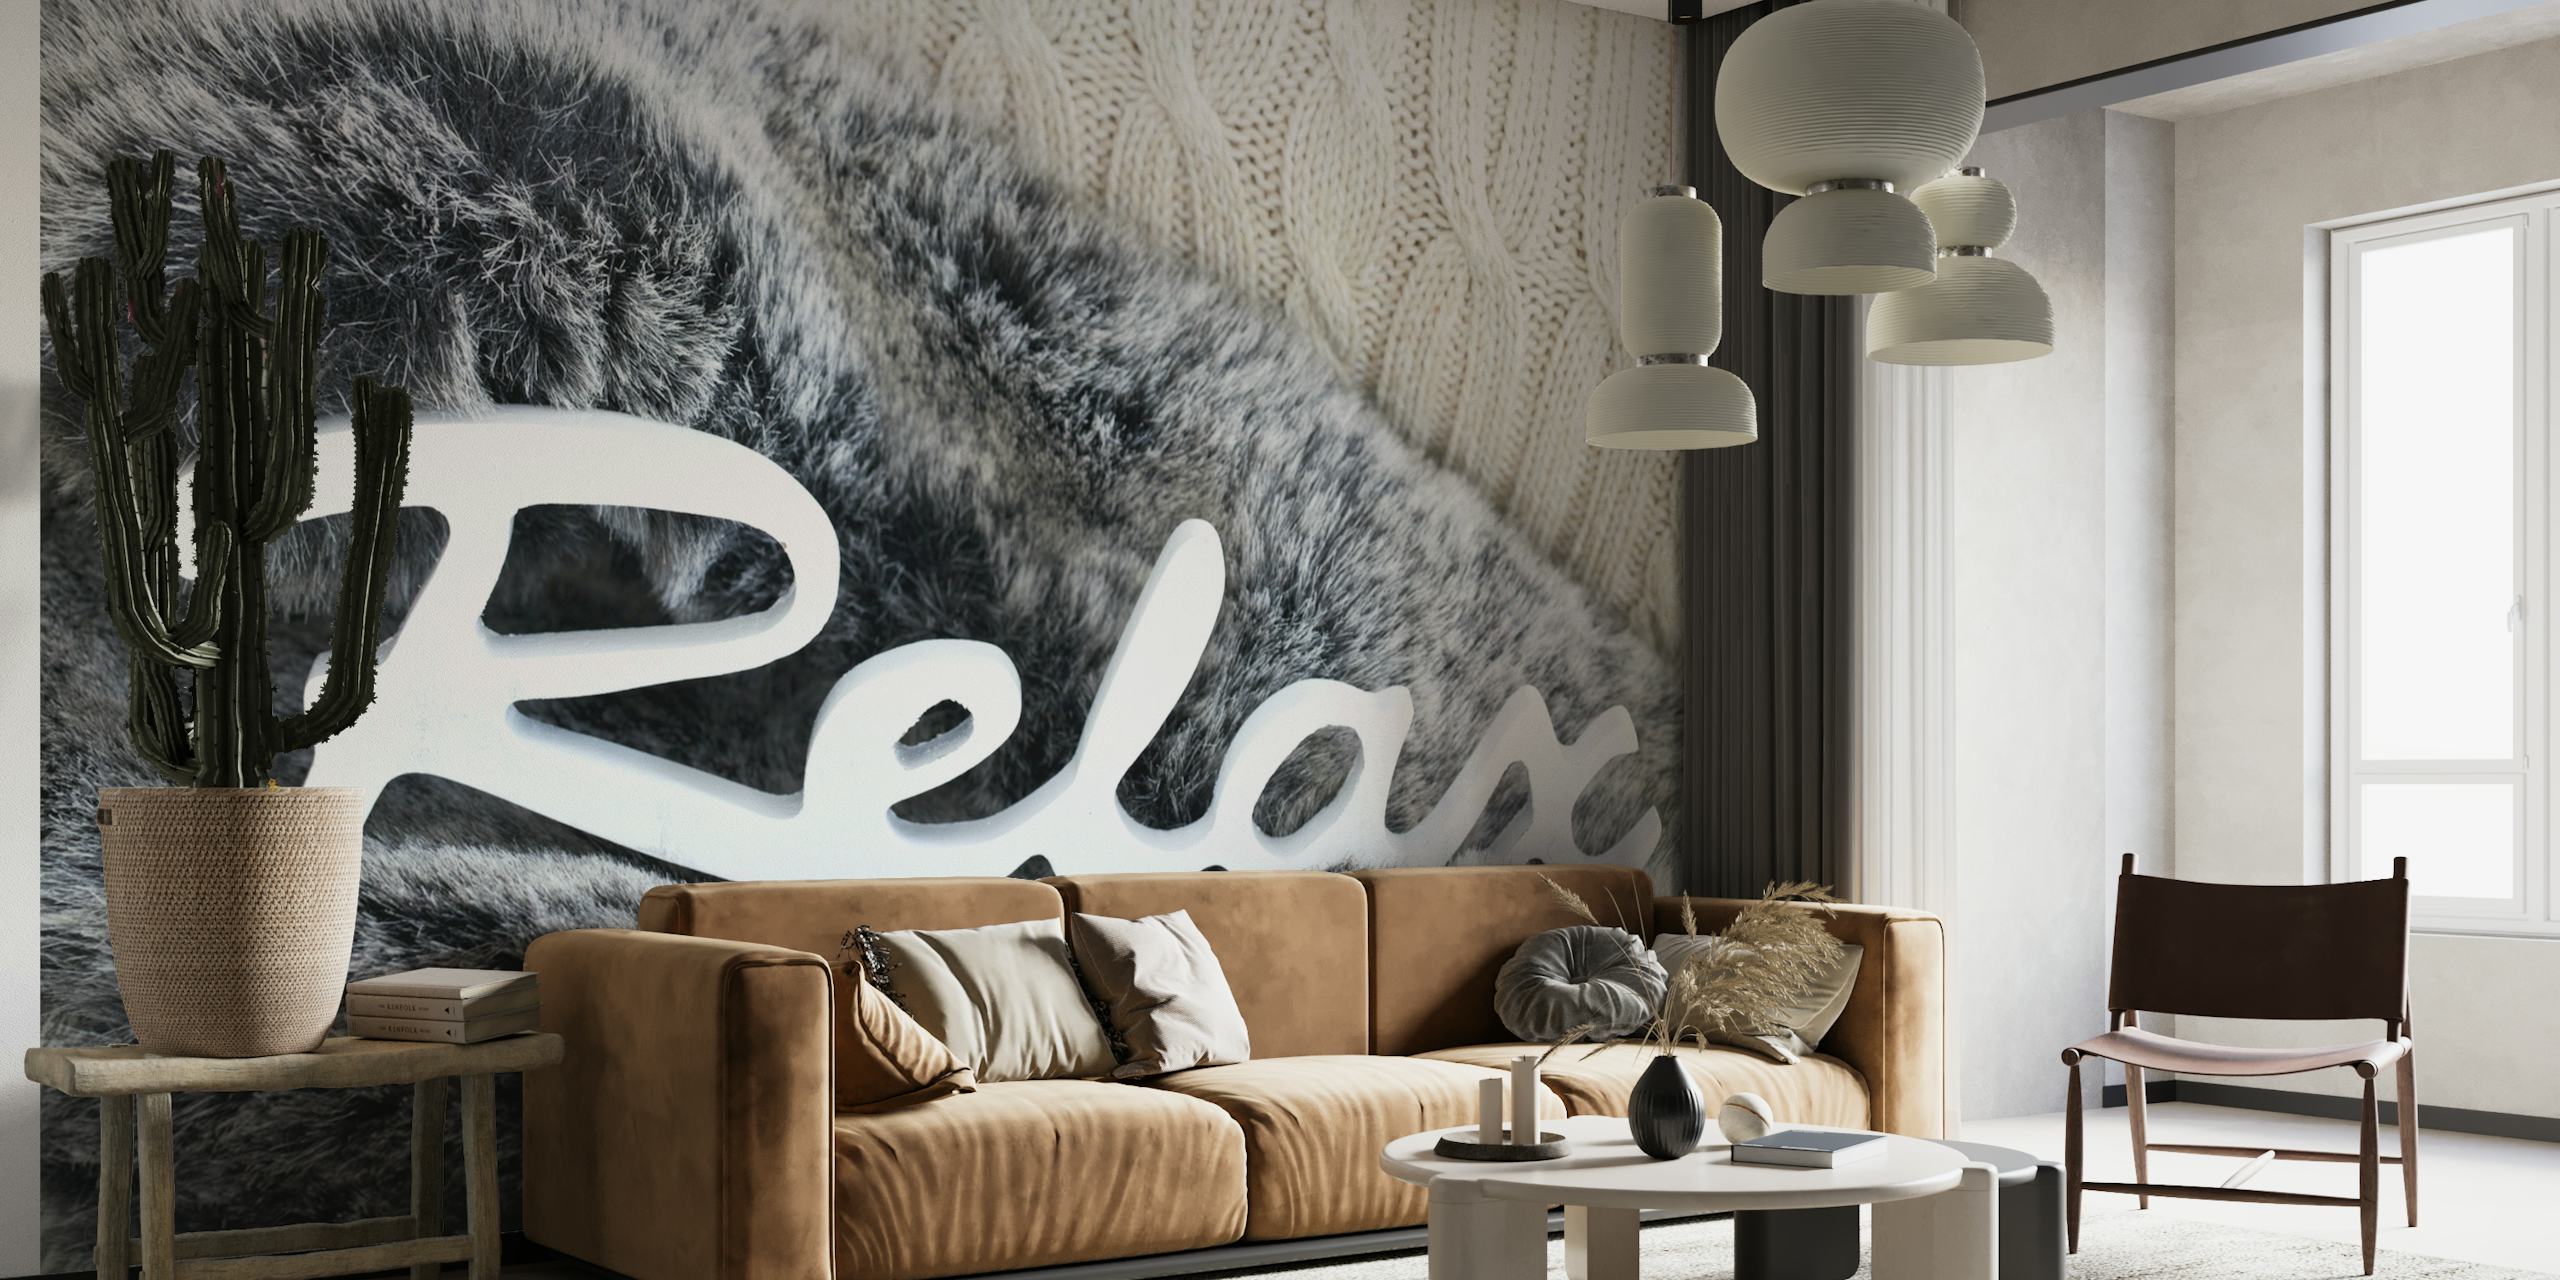 Veggmaleri med simulert pelstekstur og ordet "Relax" i stilig skrift